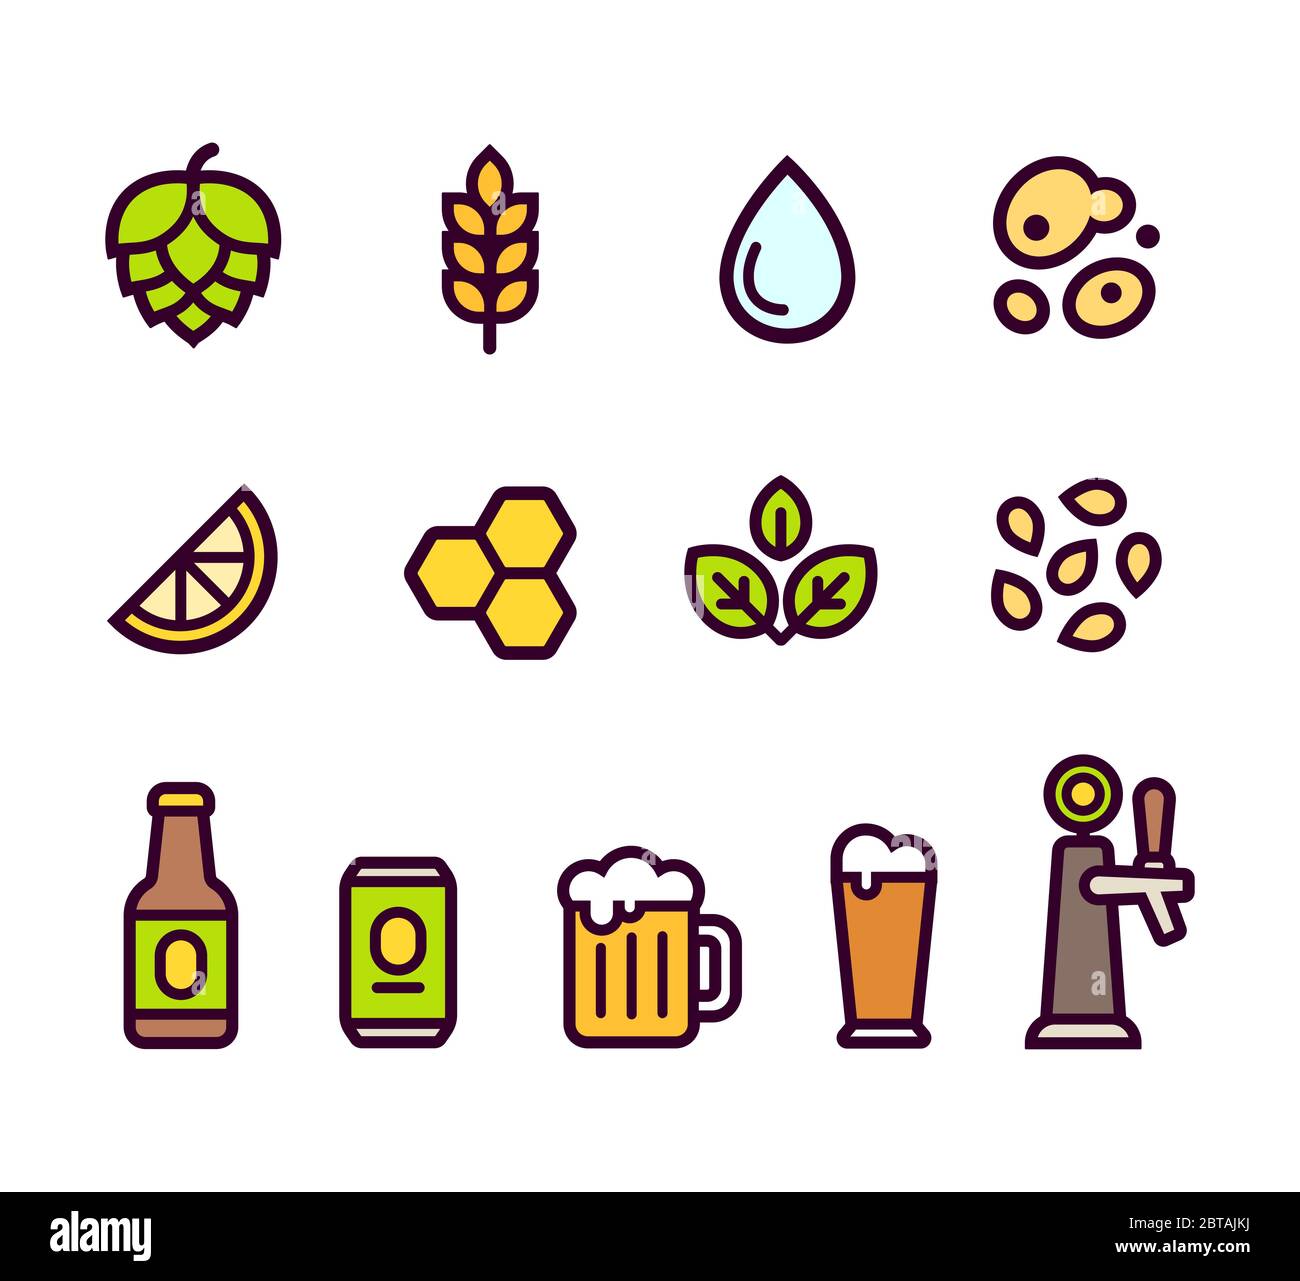 Impostazione dell'icona birra. Ingredienti e aromi per la birra, bicchieri e contenitori per la preparazione. Icone semplici di linee cartoonate, illustrazione vettoriale. Illustrazione Vettoriale